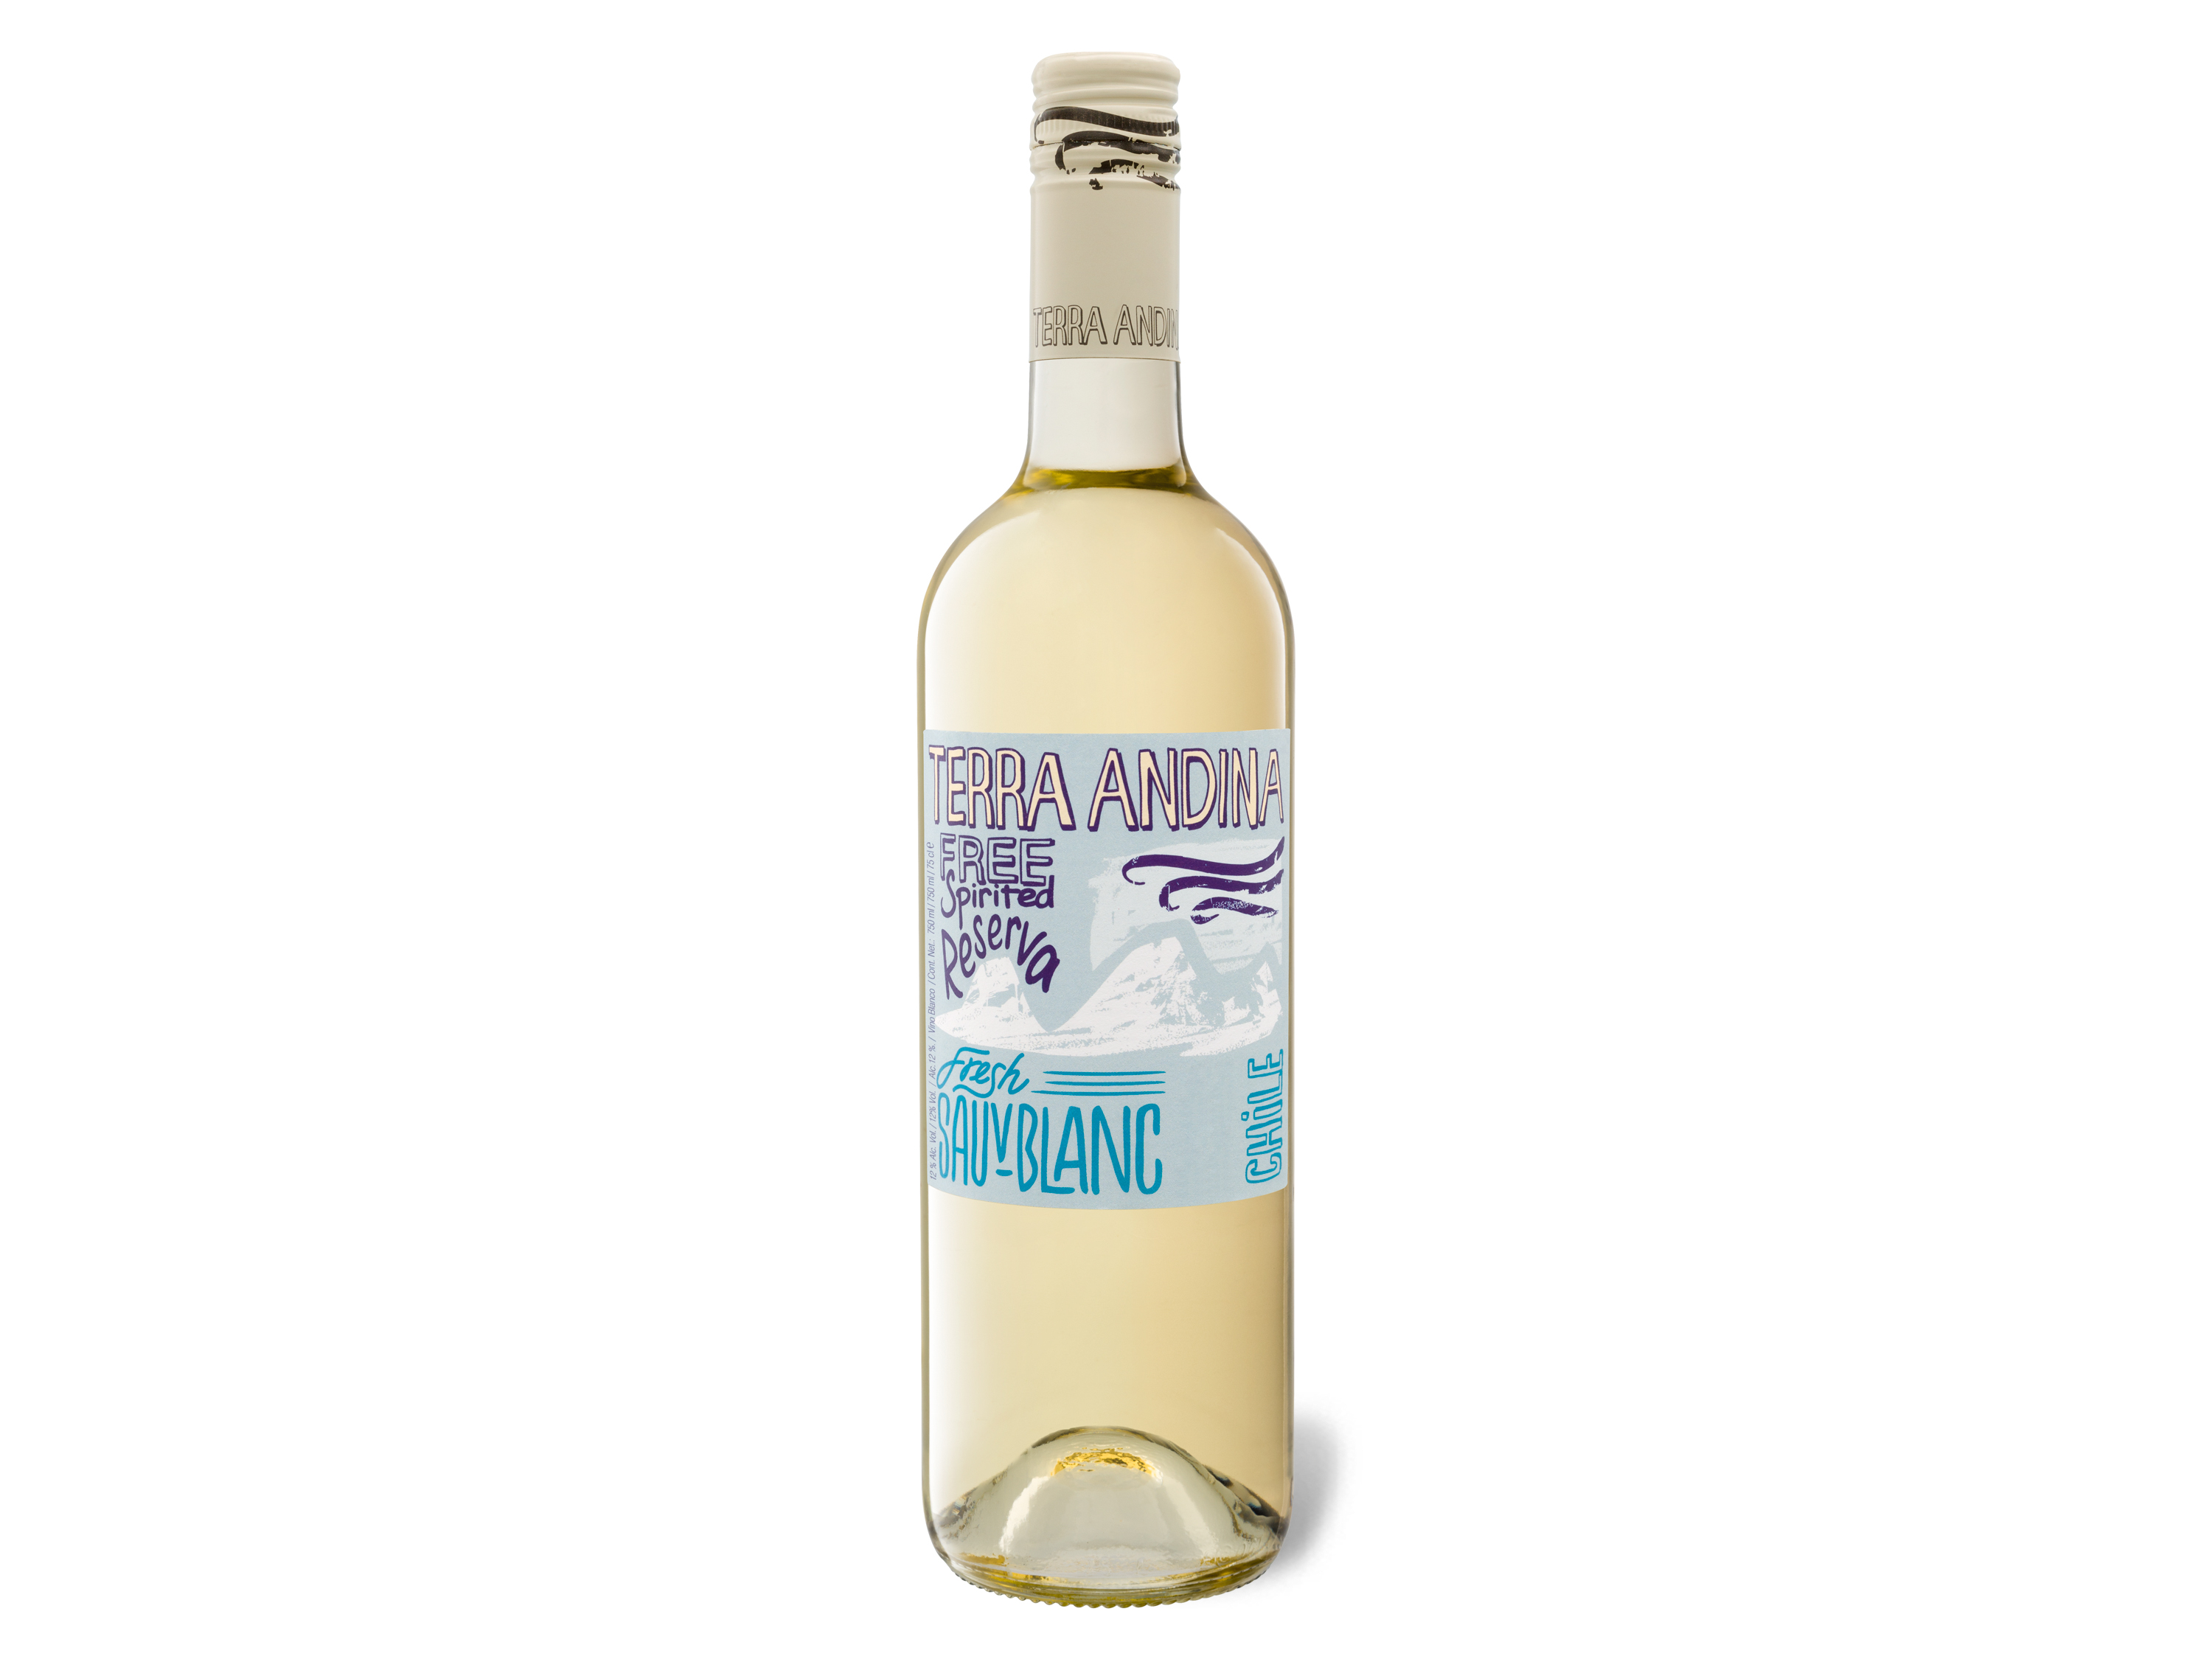 Terra Andina Blanc Sauvignon Chile Weißwein trocken, 2022 Valle Central